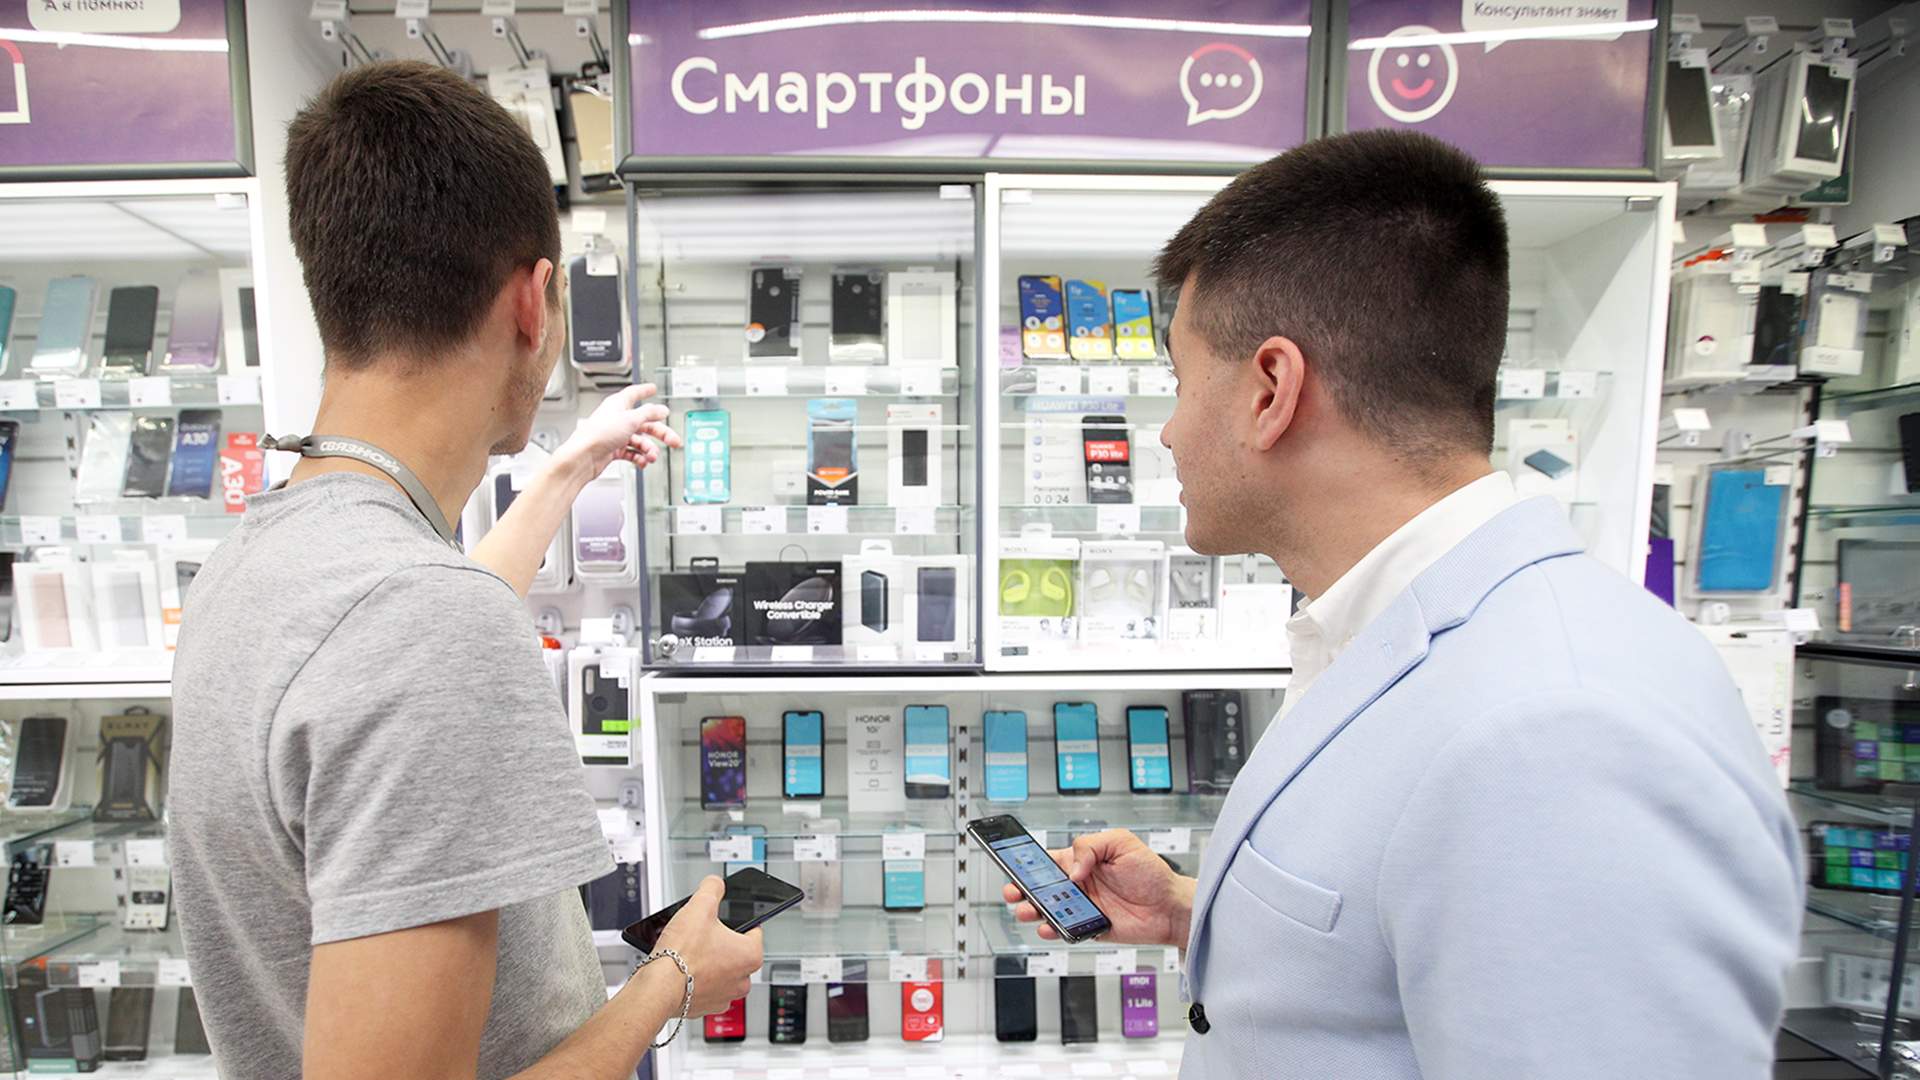 Продажа смартфонов в россии. Человек выбирает смартфон. Человек покупает смартфон. Человек со смартфоном в магазине. Магазин смартфонов.